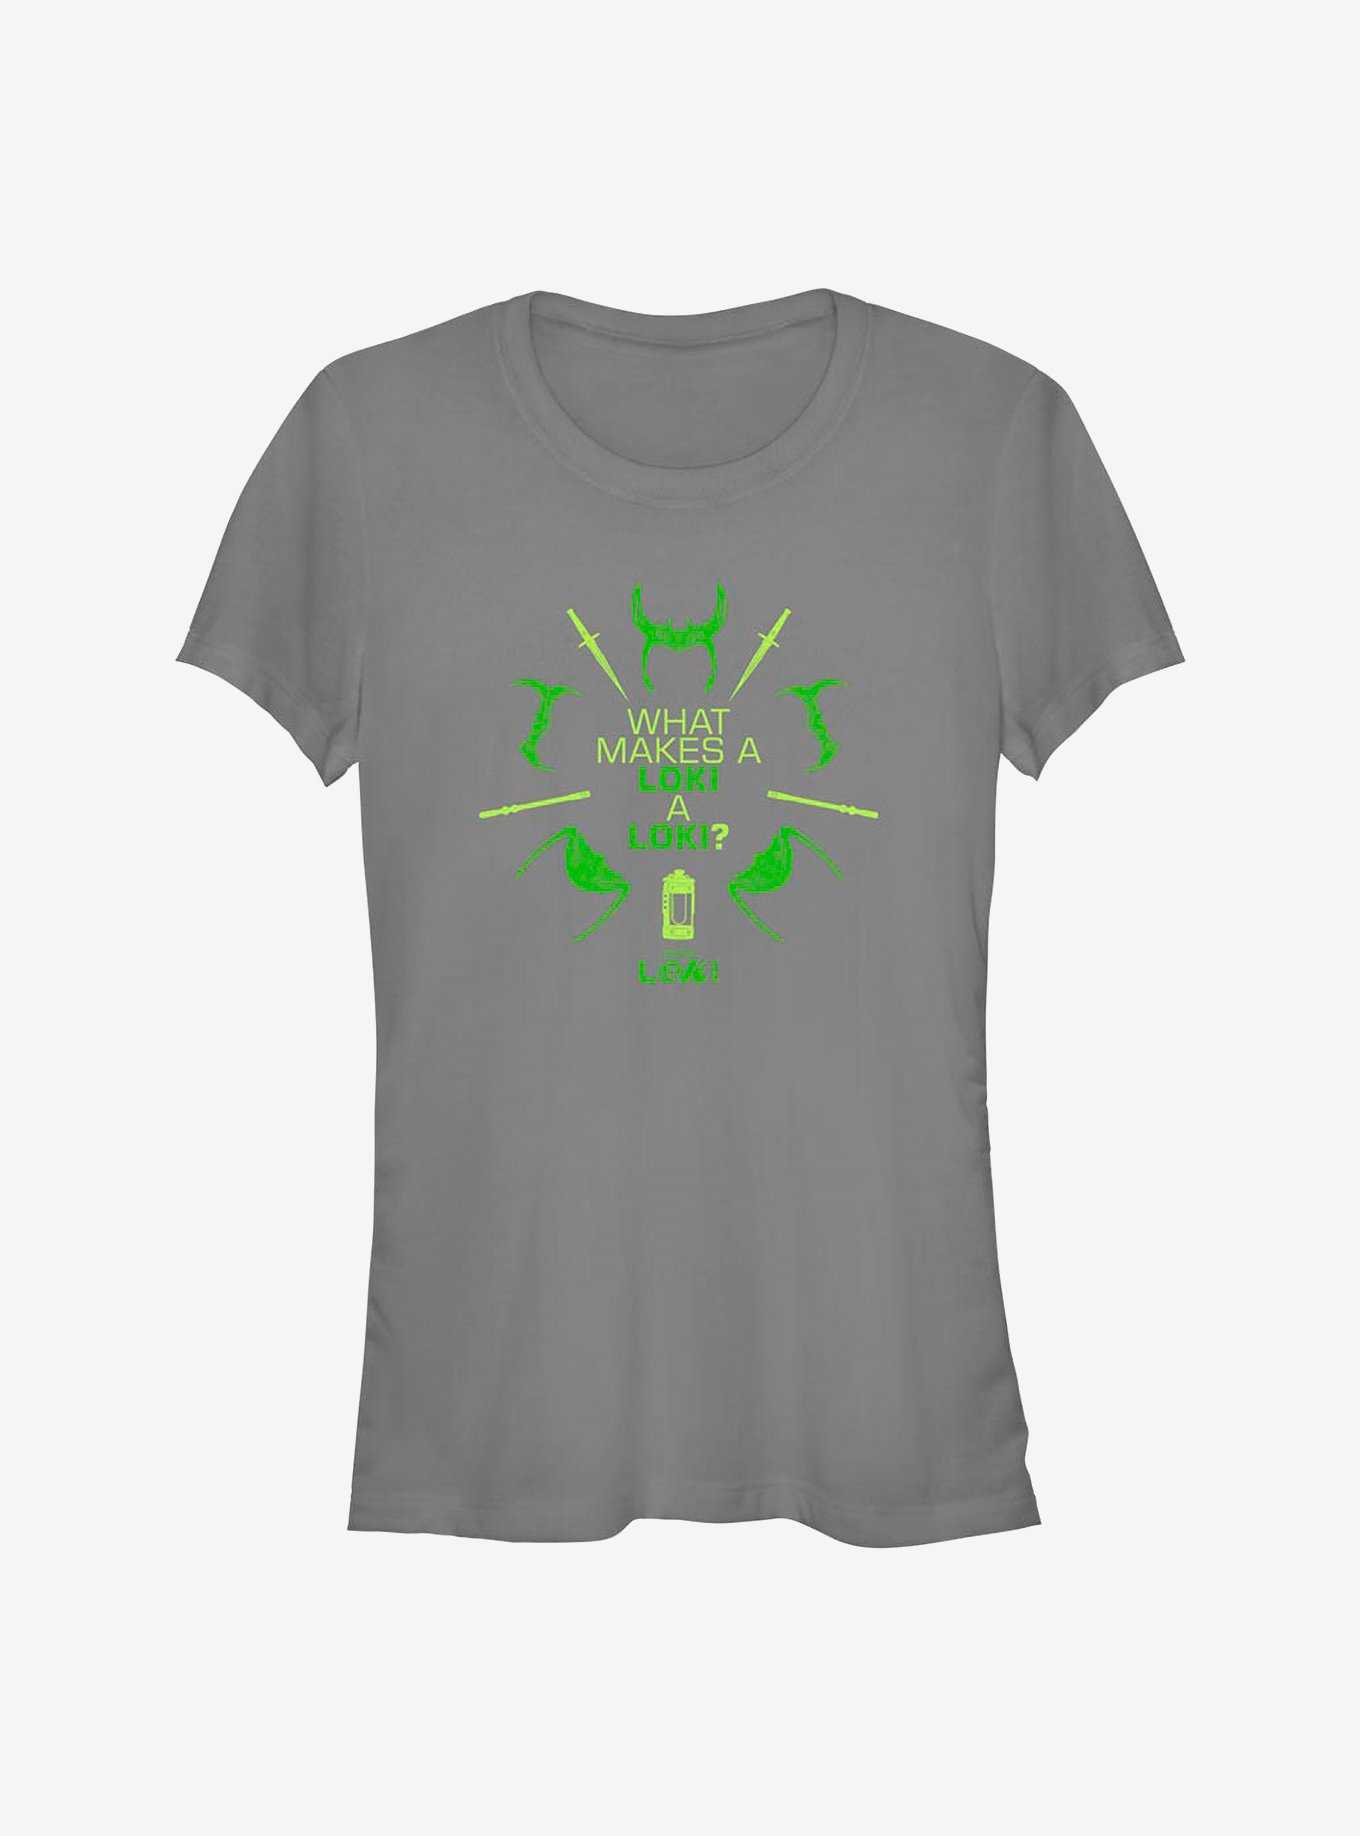 Marvel Loki What Makes A Loki Girls T-Shirt, , hi-res